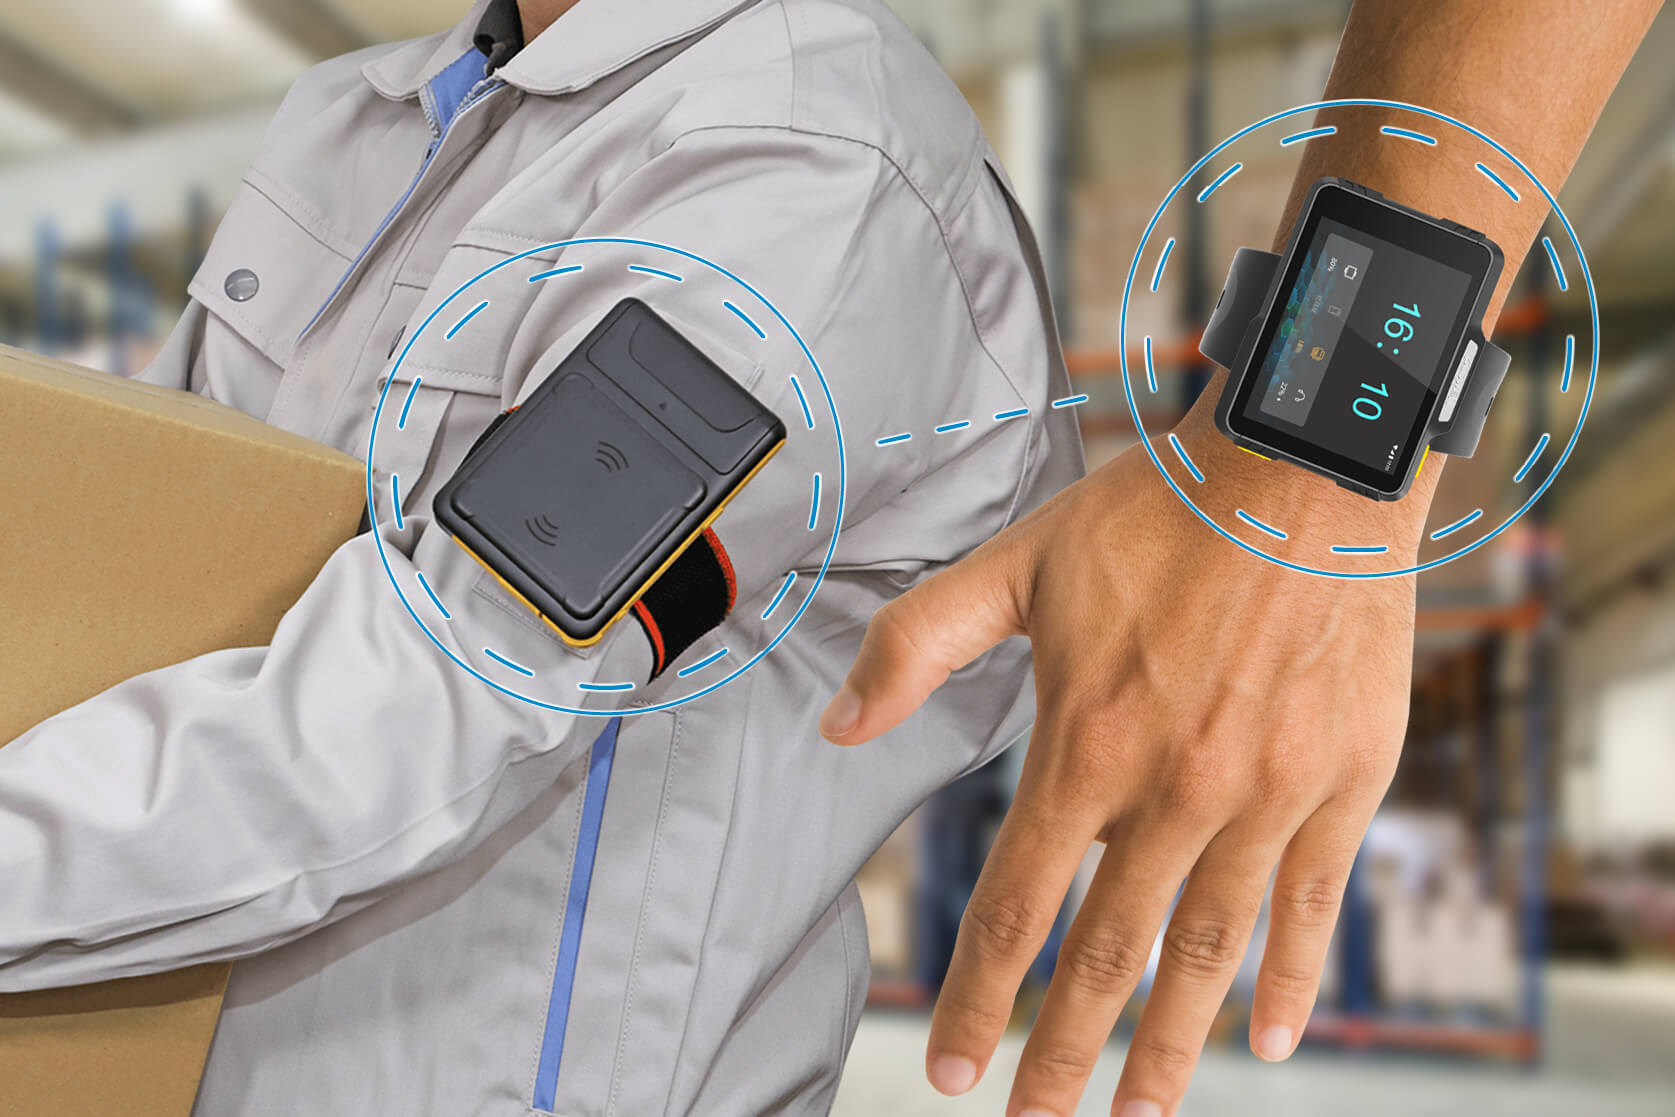 NLS-WD1は小型RFIDと併用することでハンズフリーで業務を進めることができます。